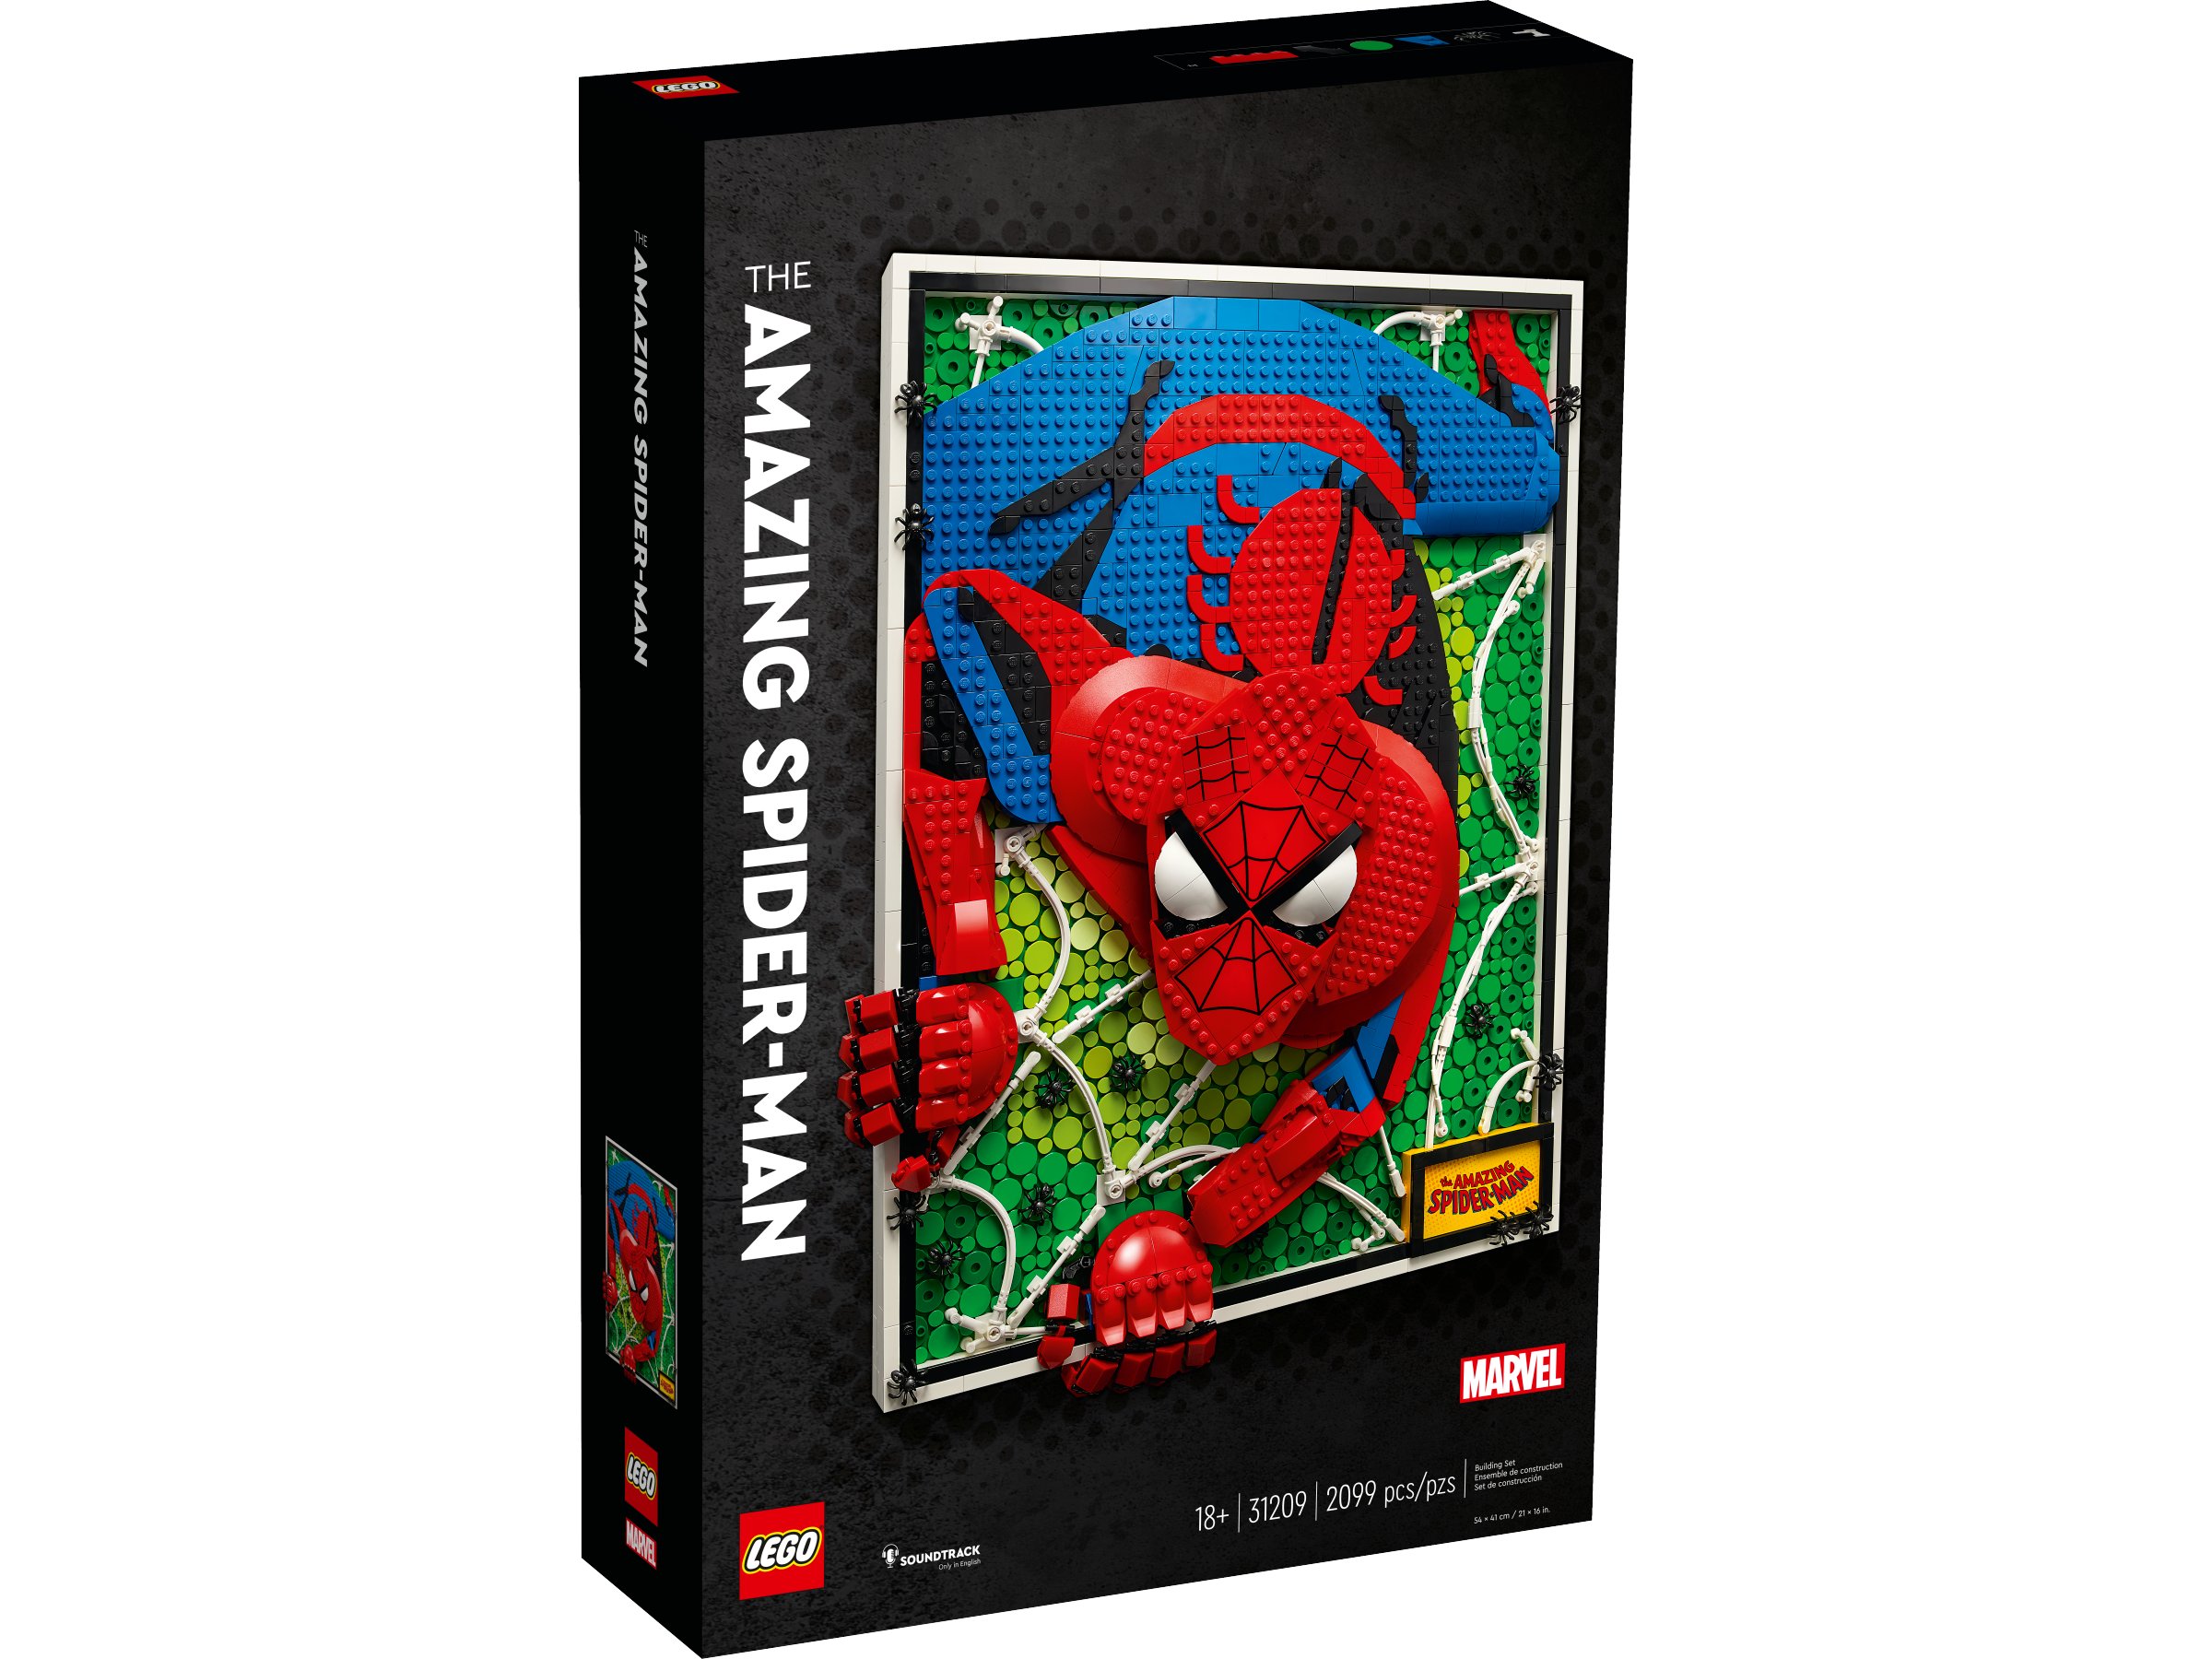 LEGO met en vente un incroyable set The Amazing Spider-Man #11